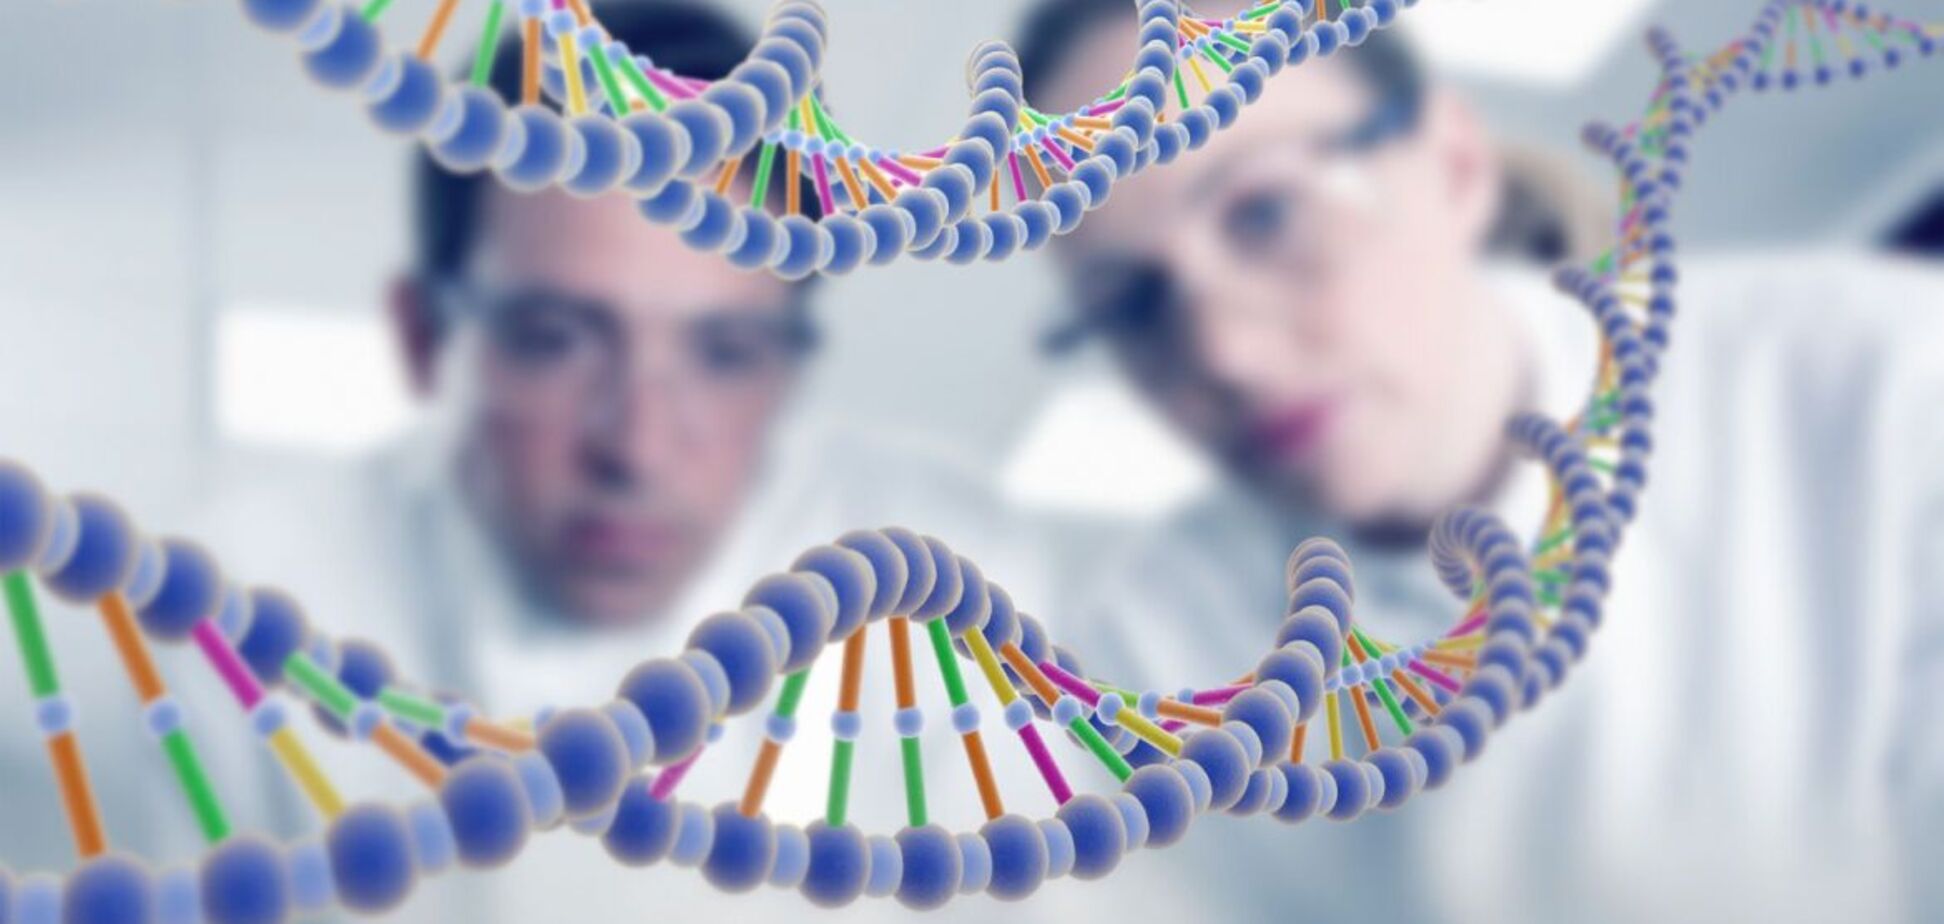 Говорят гены: как можно улучшить плохую наследственность